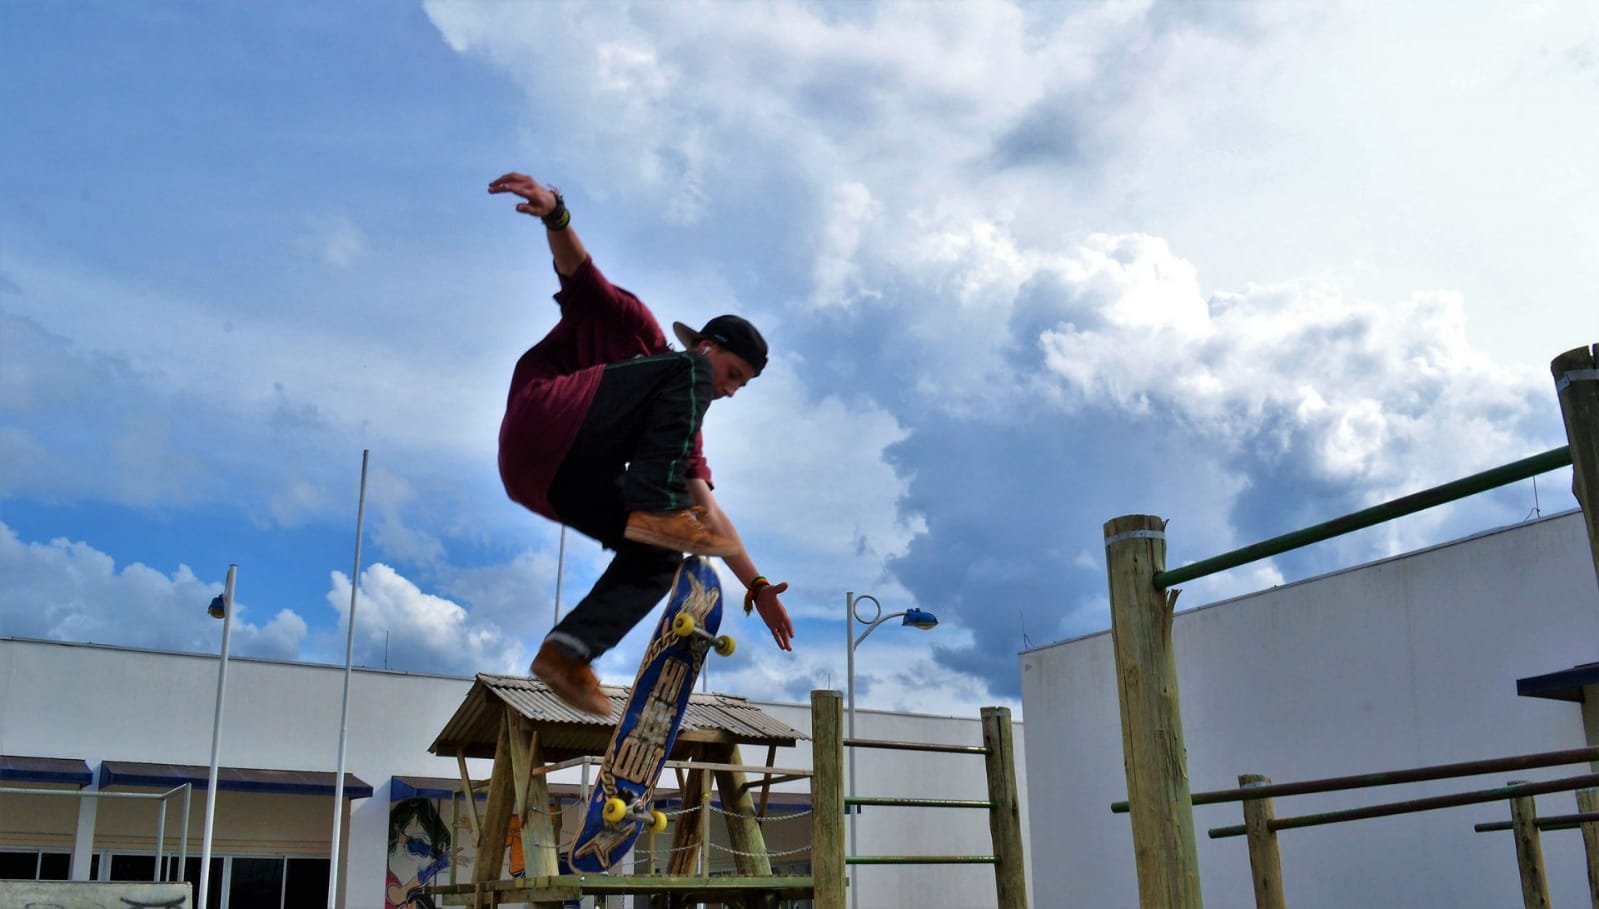 Skate surgiu nos EUA em 1965; dez anos depois, invadia o Brasil